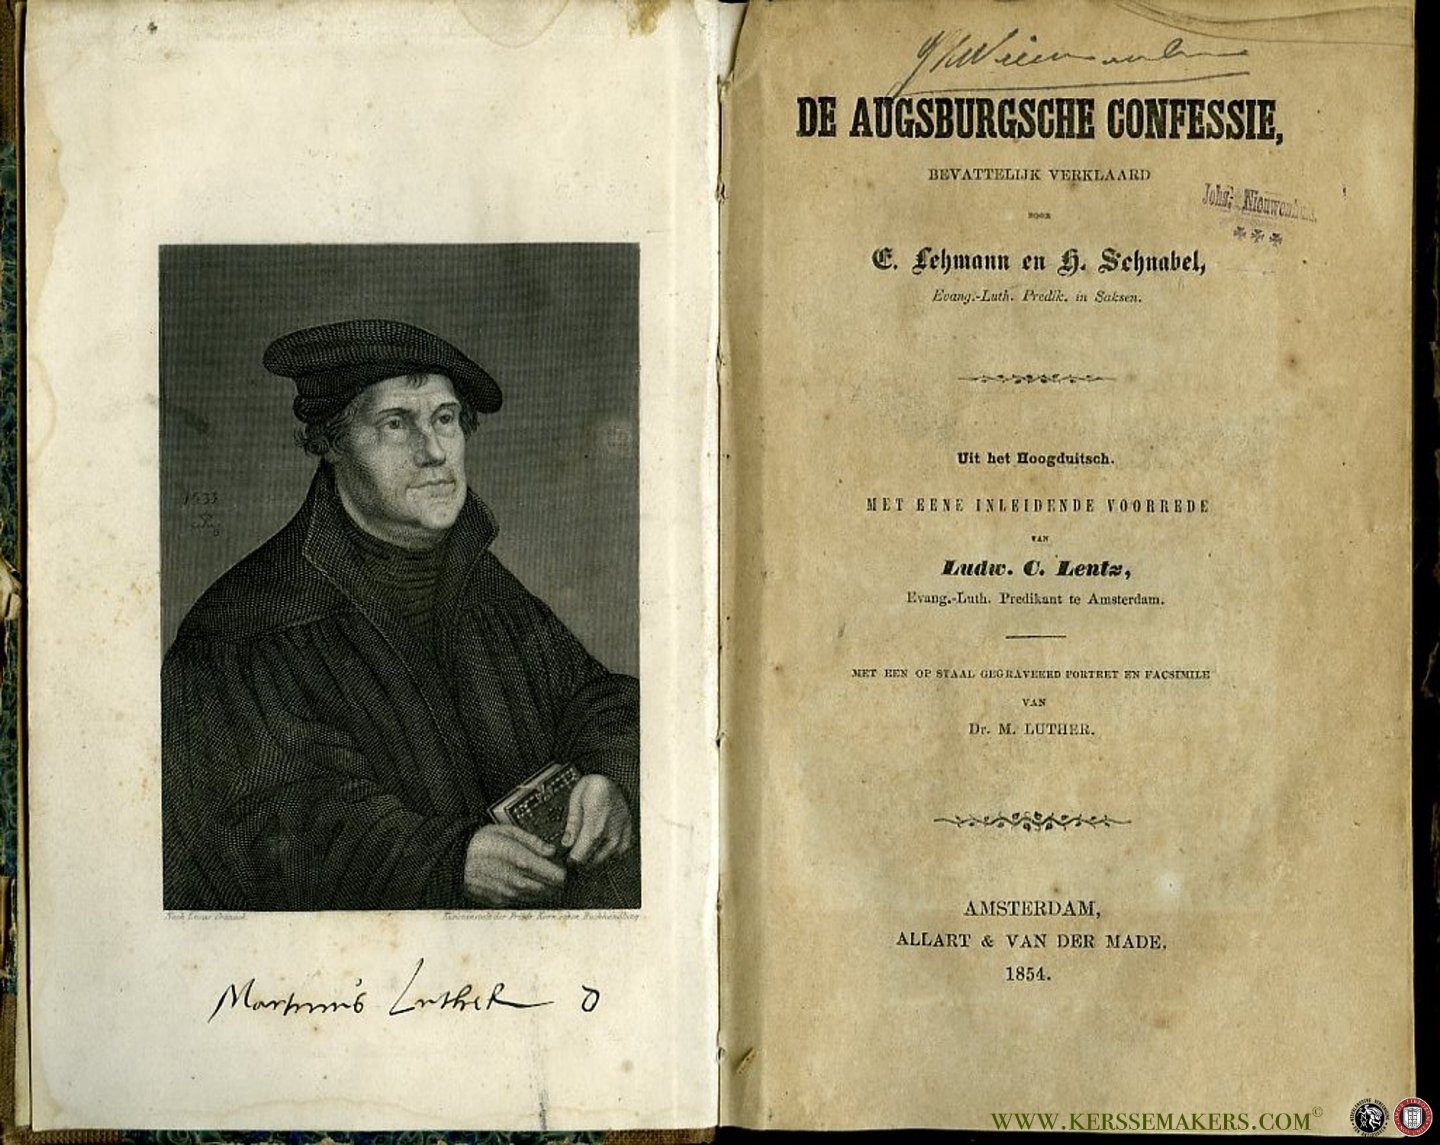 LEHMANN, E. / SCHNABEL, H. - De Augsburgsche Confessie - Bevattelijk verklaard